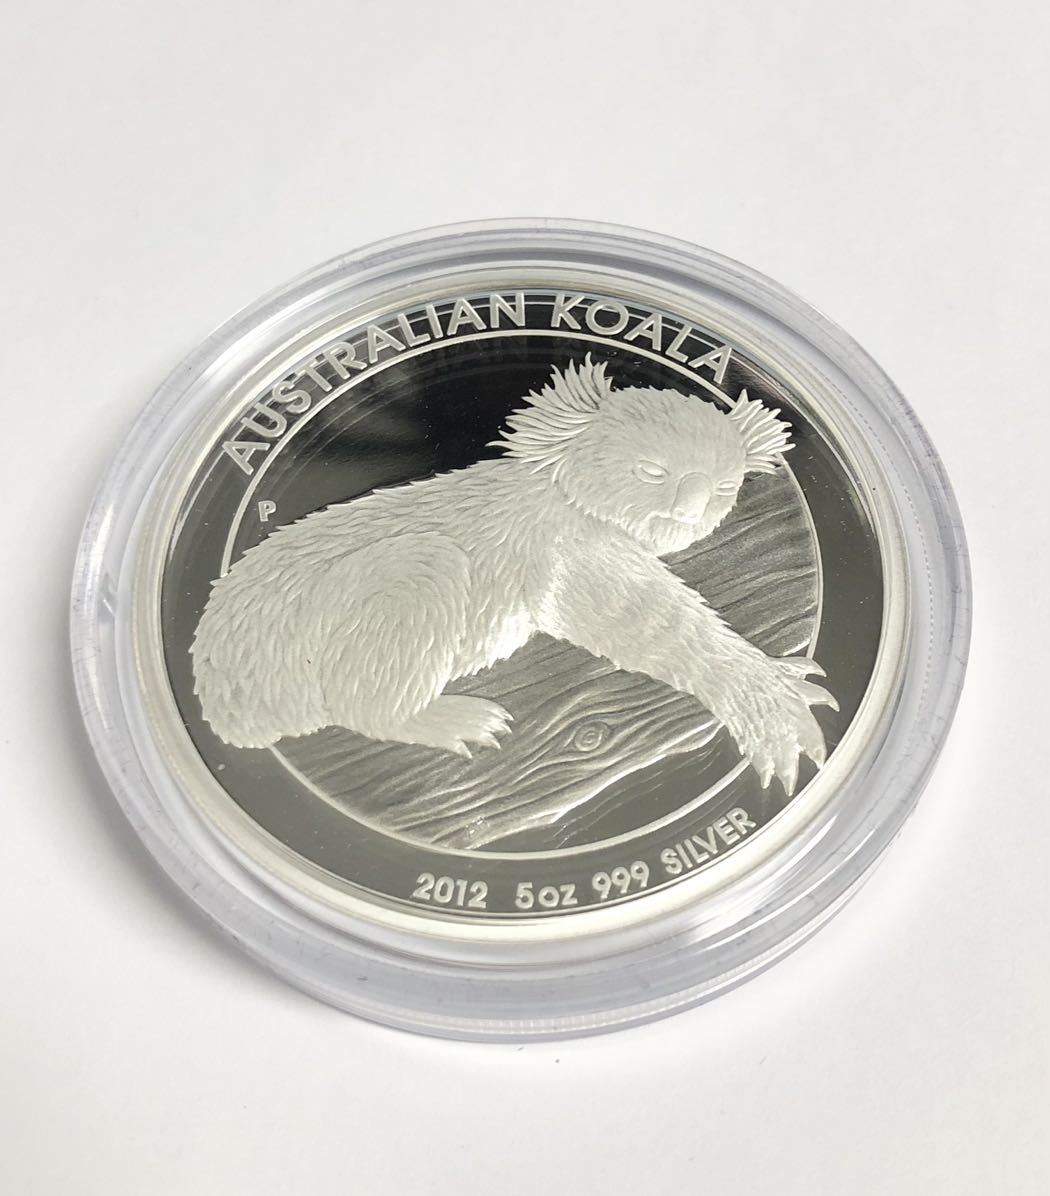 オーストラリア 銀貨 2012年 コアラ 5oz シルバー プルーフコイン_画像1